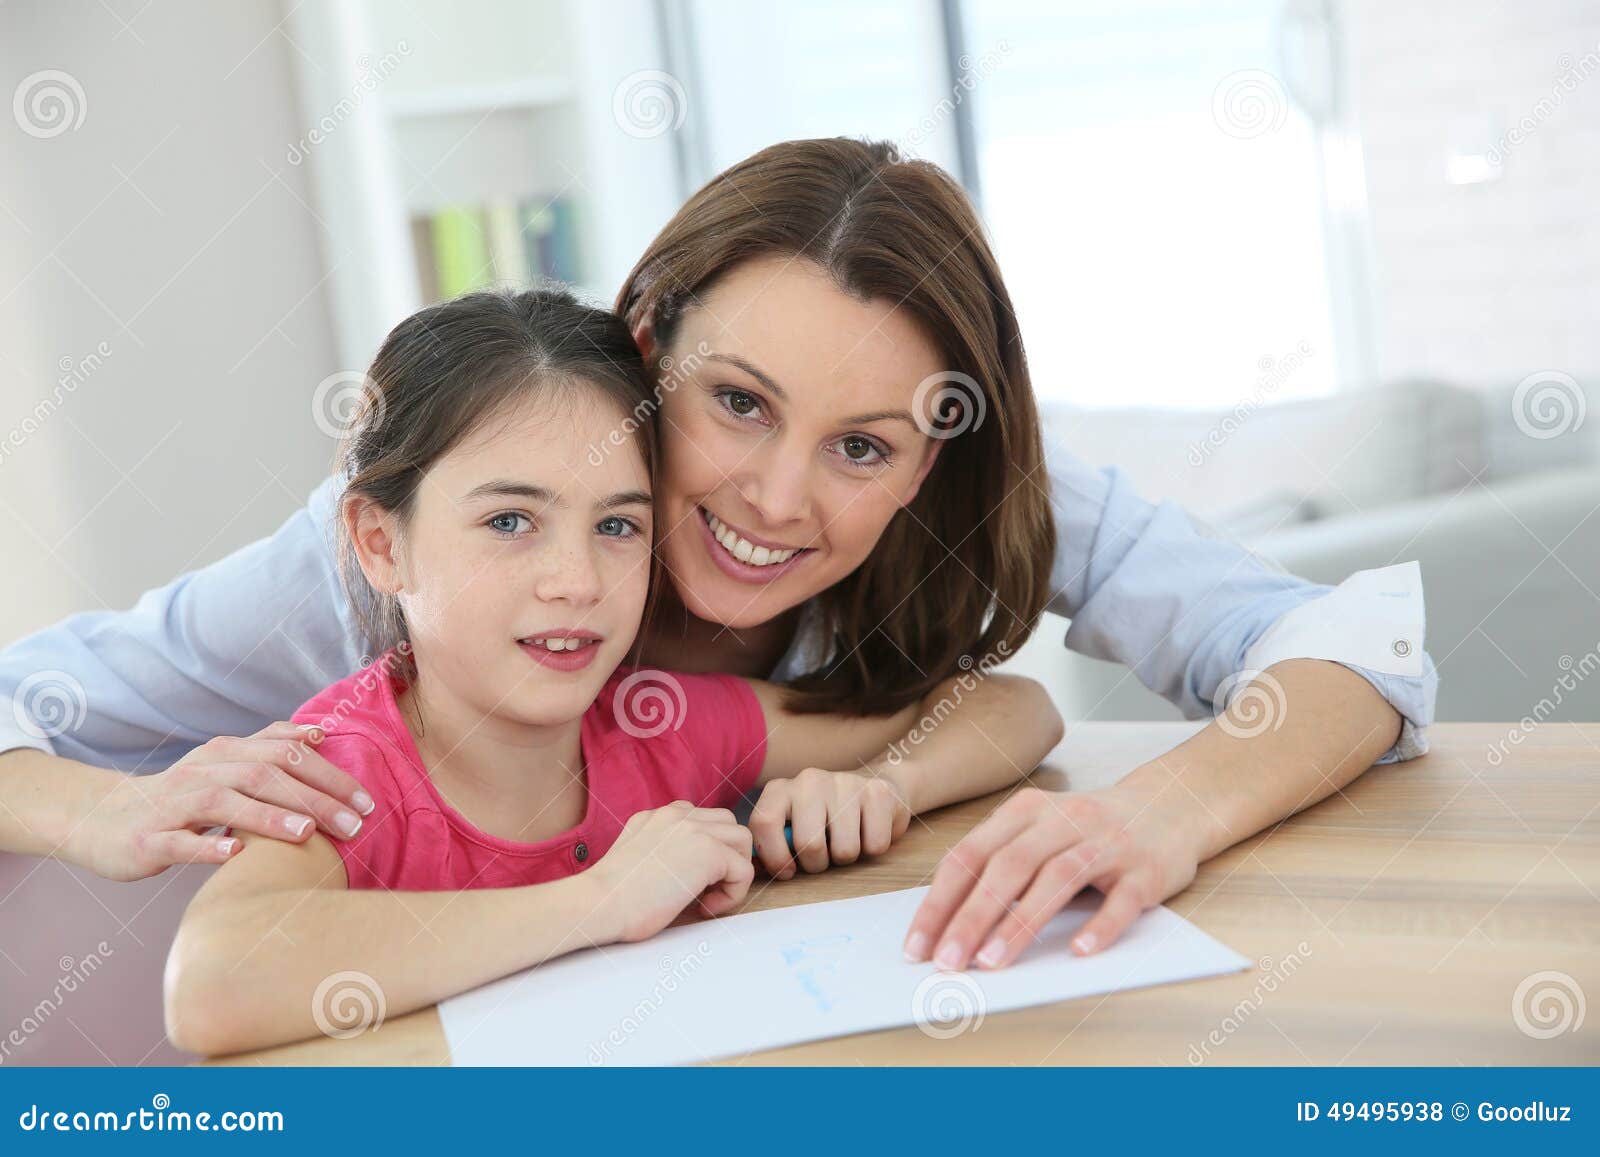 Мать учит 18. Мама научила дочь. Дочь преподает урок маме. Мама учит девочку. Мама учит дочку картинки.